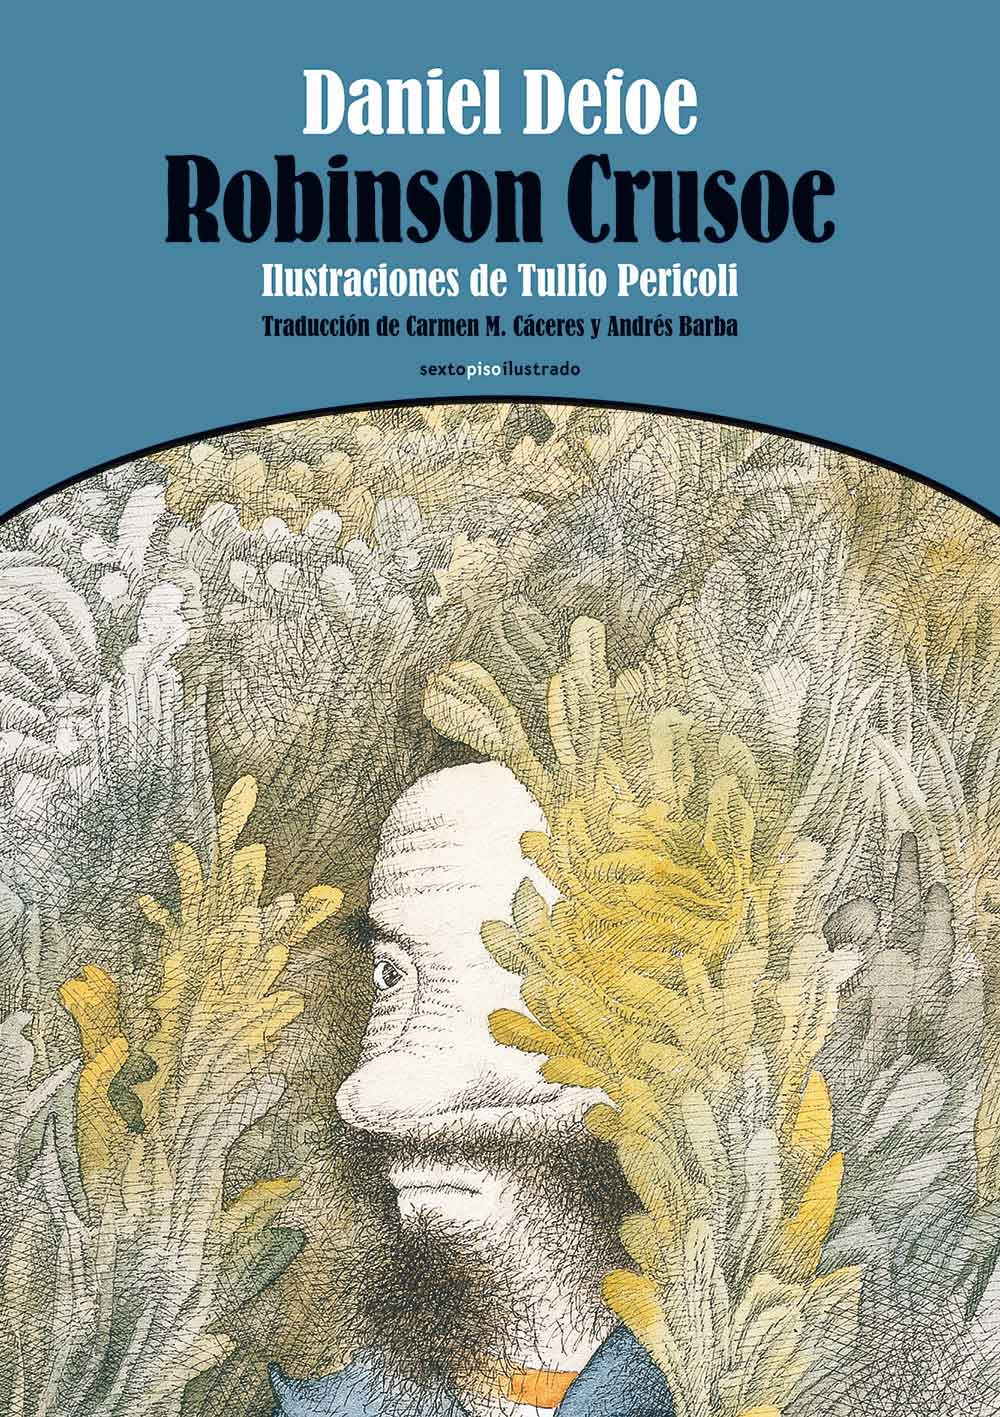 Robinson Crusoe, Daniel Defoe, Tullio Pericoli, ilustrador. Traducción: Carmen M. Cáceres y Andrés Barba. Editorial Sexto Piso España, 2014. 